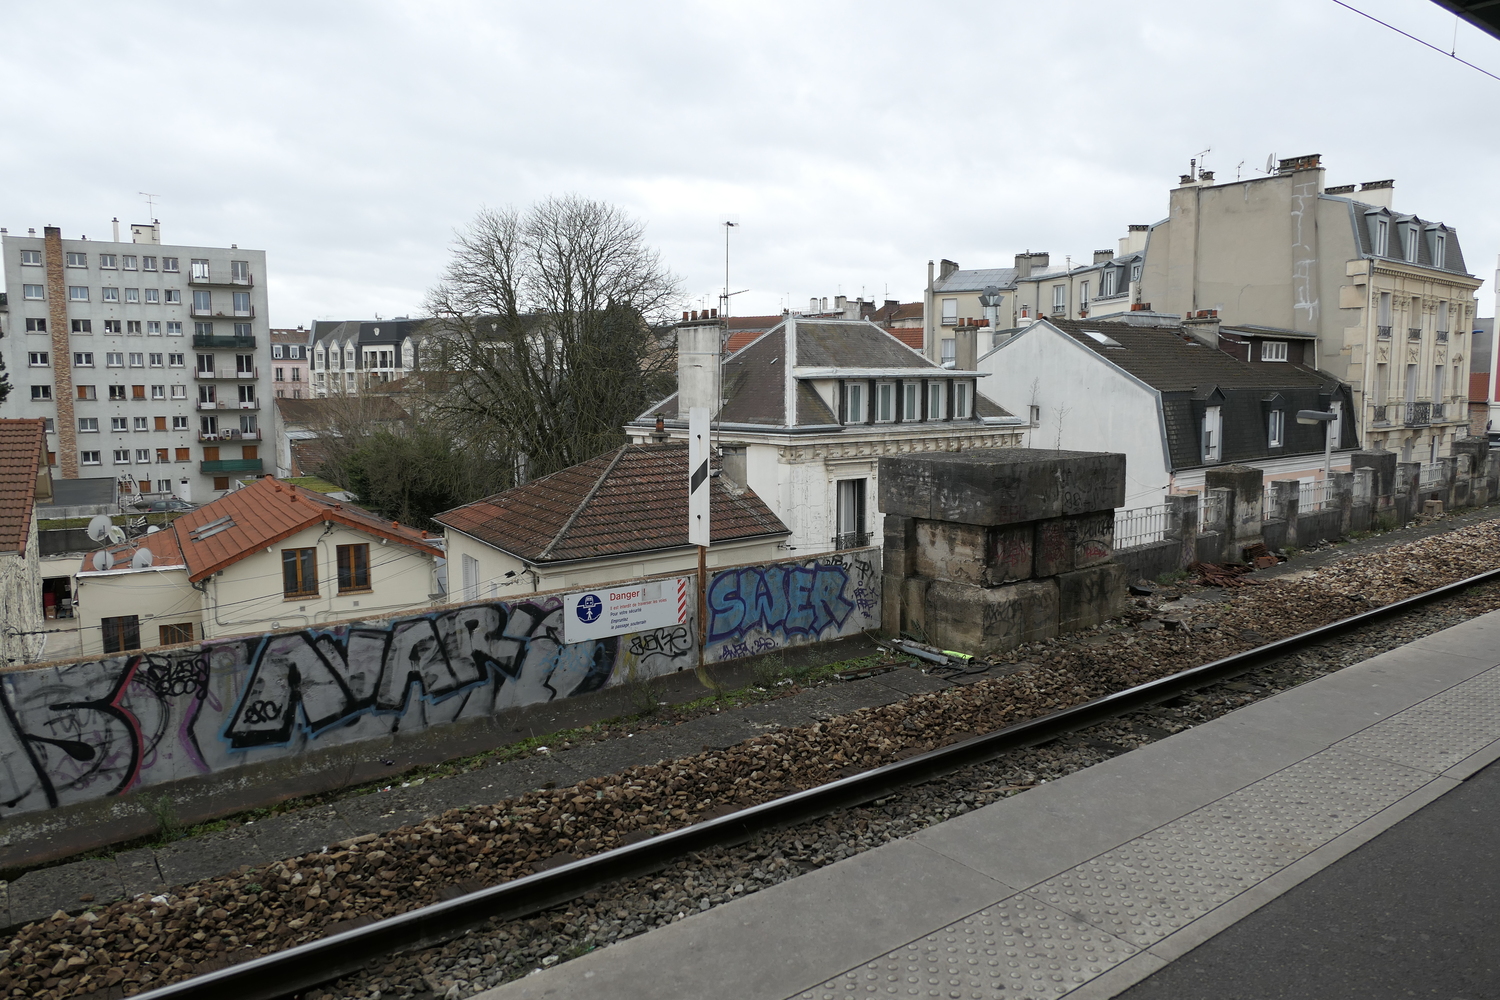 Au moment de repartir, Océane doit attendre le RER un petit moment sur le quai de la gare, elle en profite pour regarder le paysage et prendre de nouvelles photos © Globe Reporters